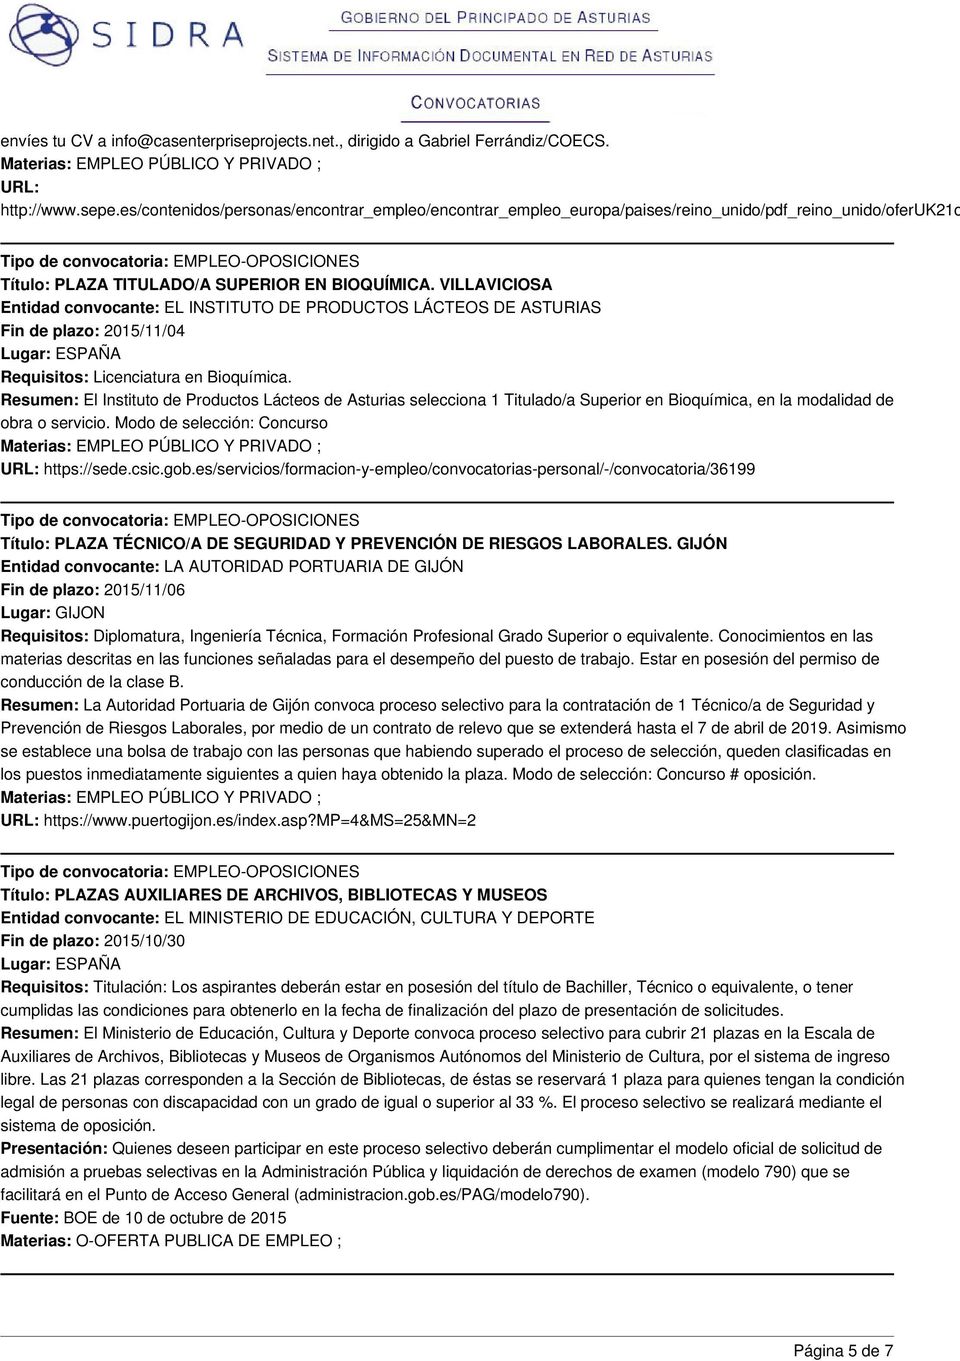 VILLAVICIOSA Entidad convocante: EL INSTITUTO DE PRODUCTOS LÁCTEOS DE ASTURIAS Fin de plazo: 2015/11/04 Requisitos: Licenciatura en Bioquímica.